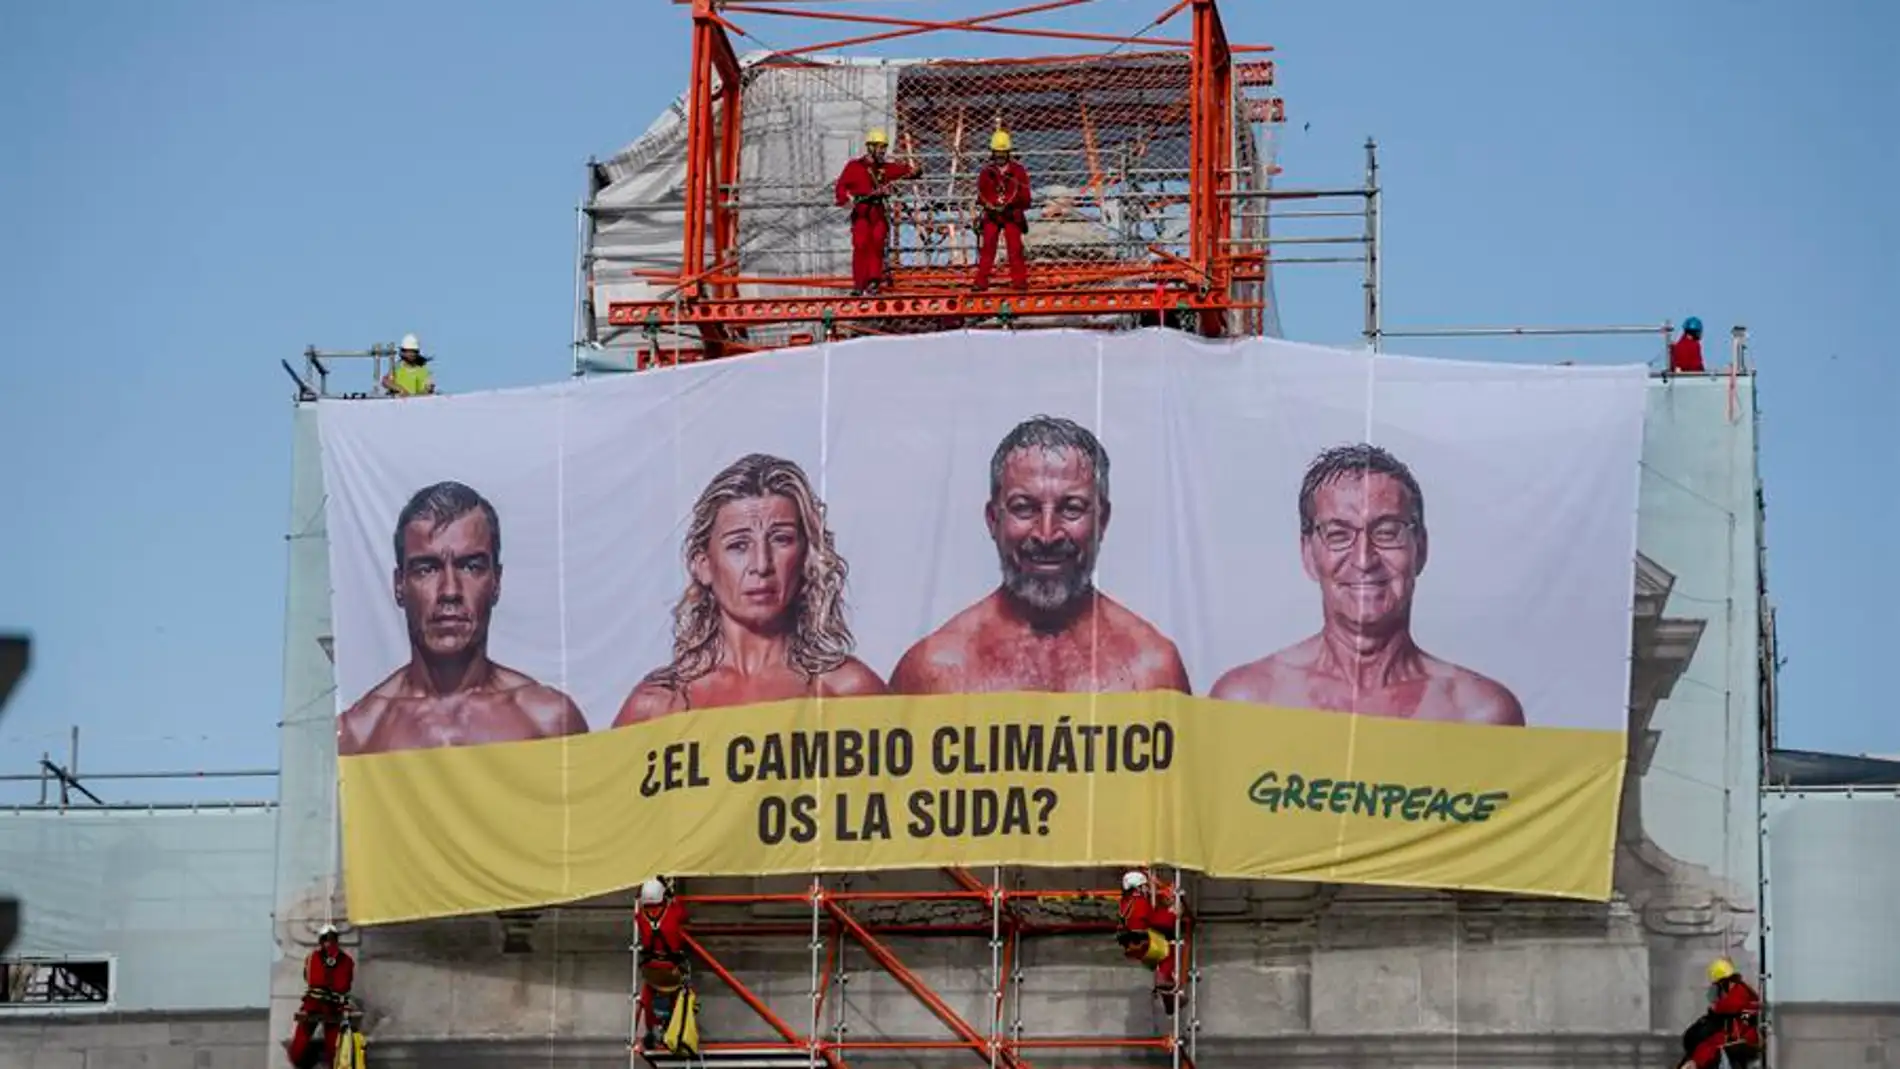 Greenpeace coloca una pancarta contra los candidatos: "¿El cambio climático os la suda?"